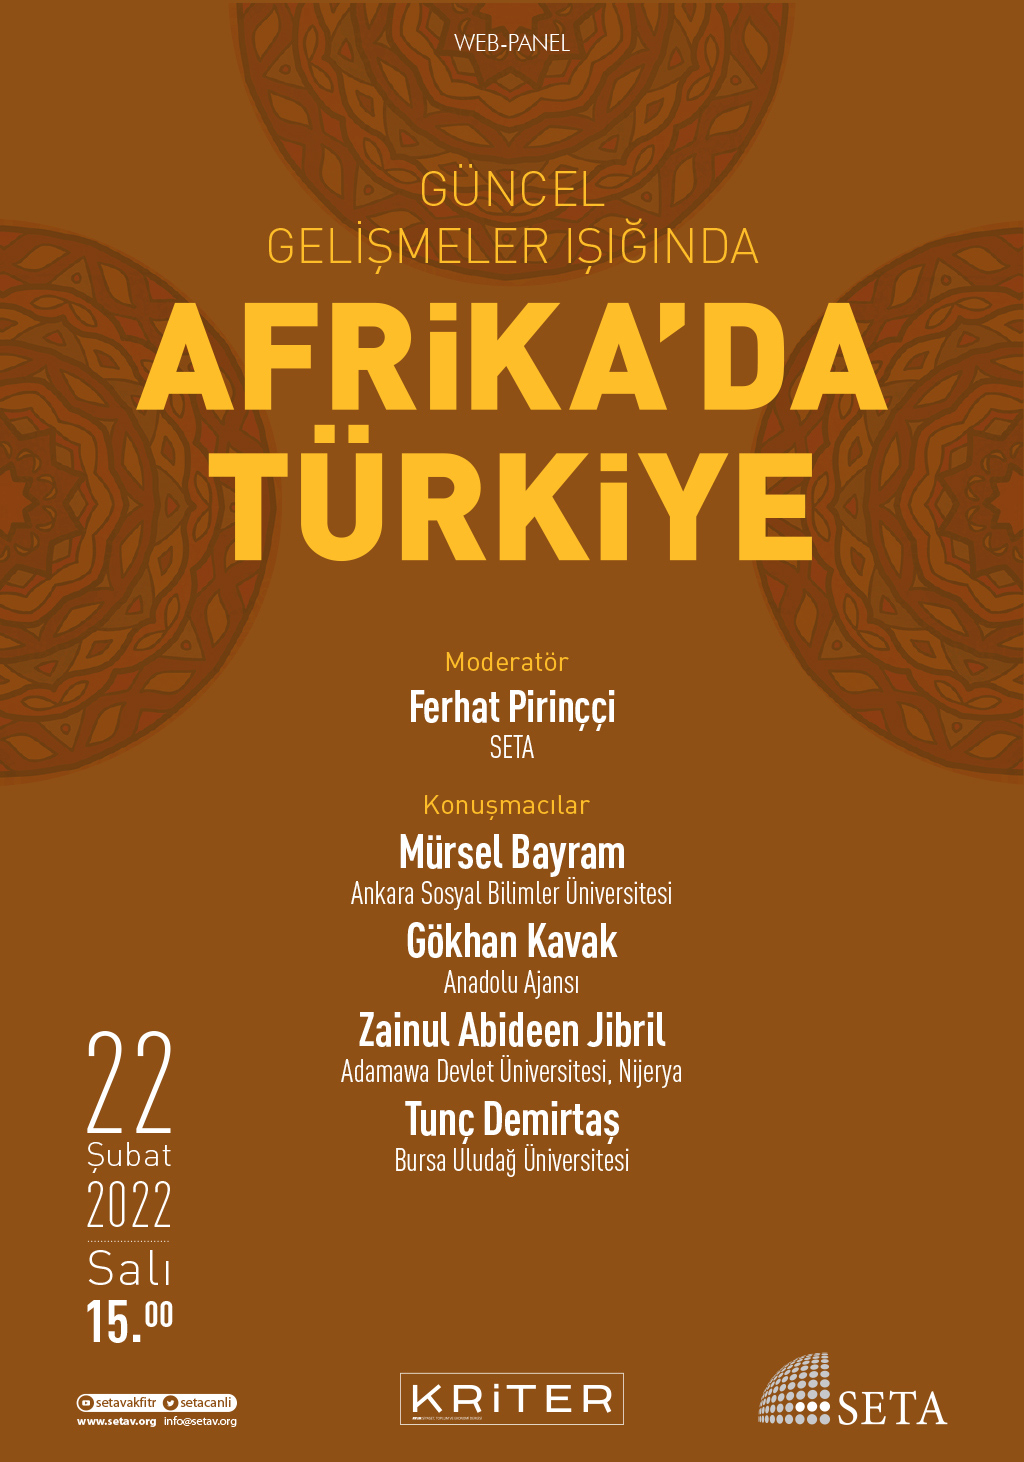 Web Panel Güncel Gelişmeler Işığında Afrika'da Türkiye